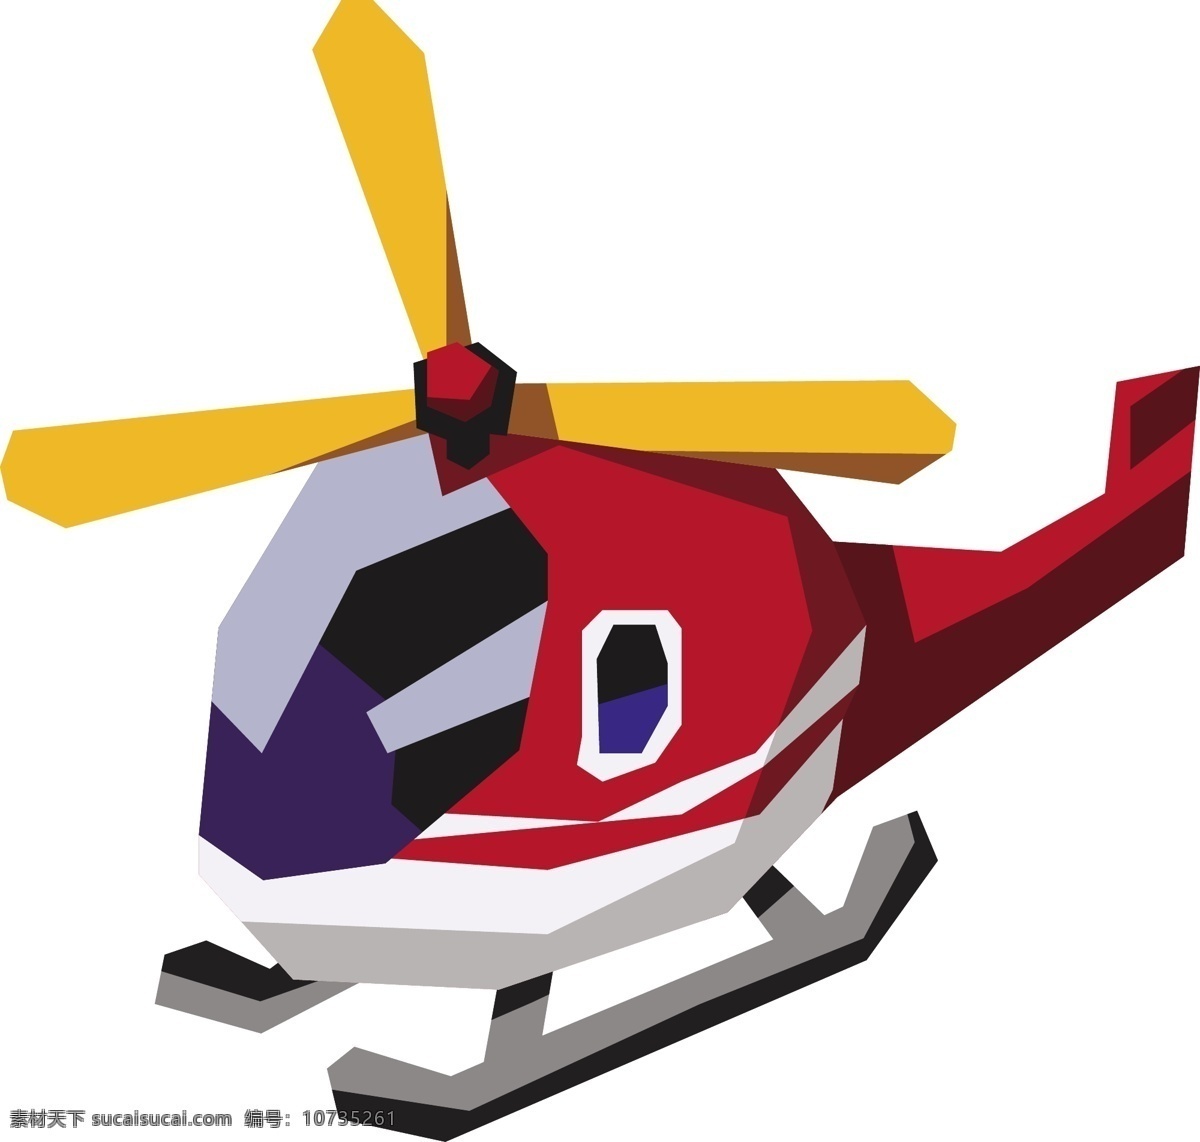 卡通 几何 直升机 商用 元素 交通工具 矢量